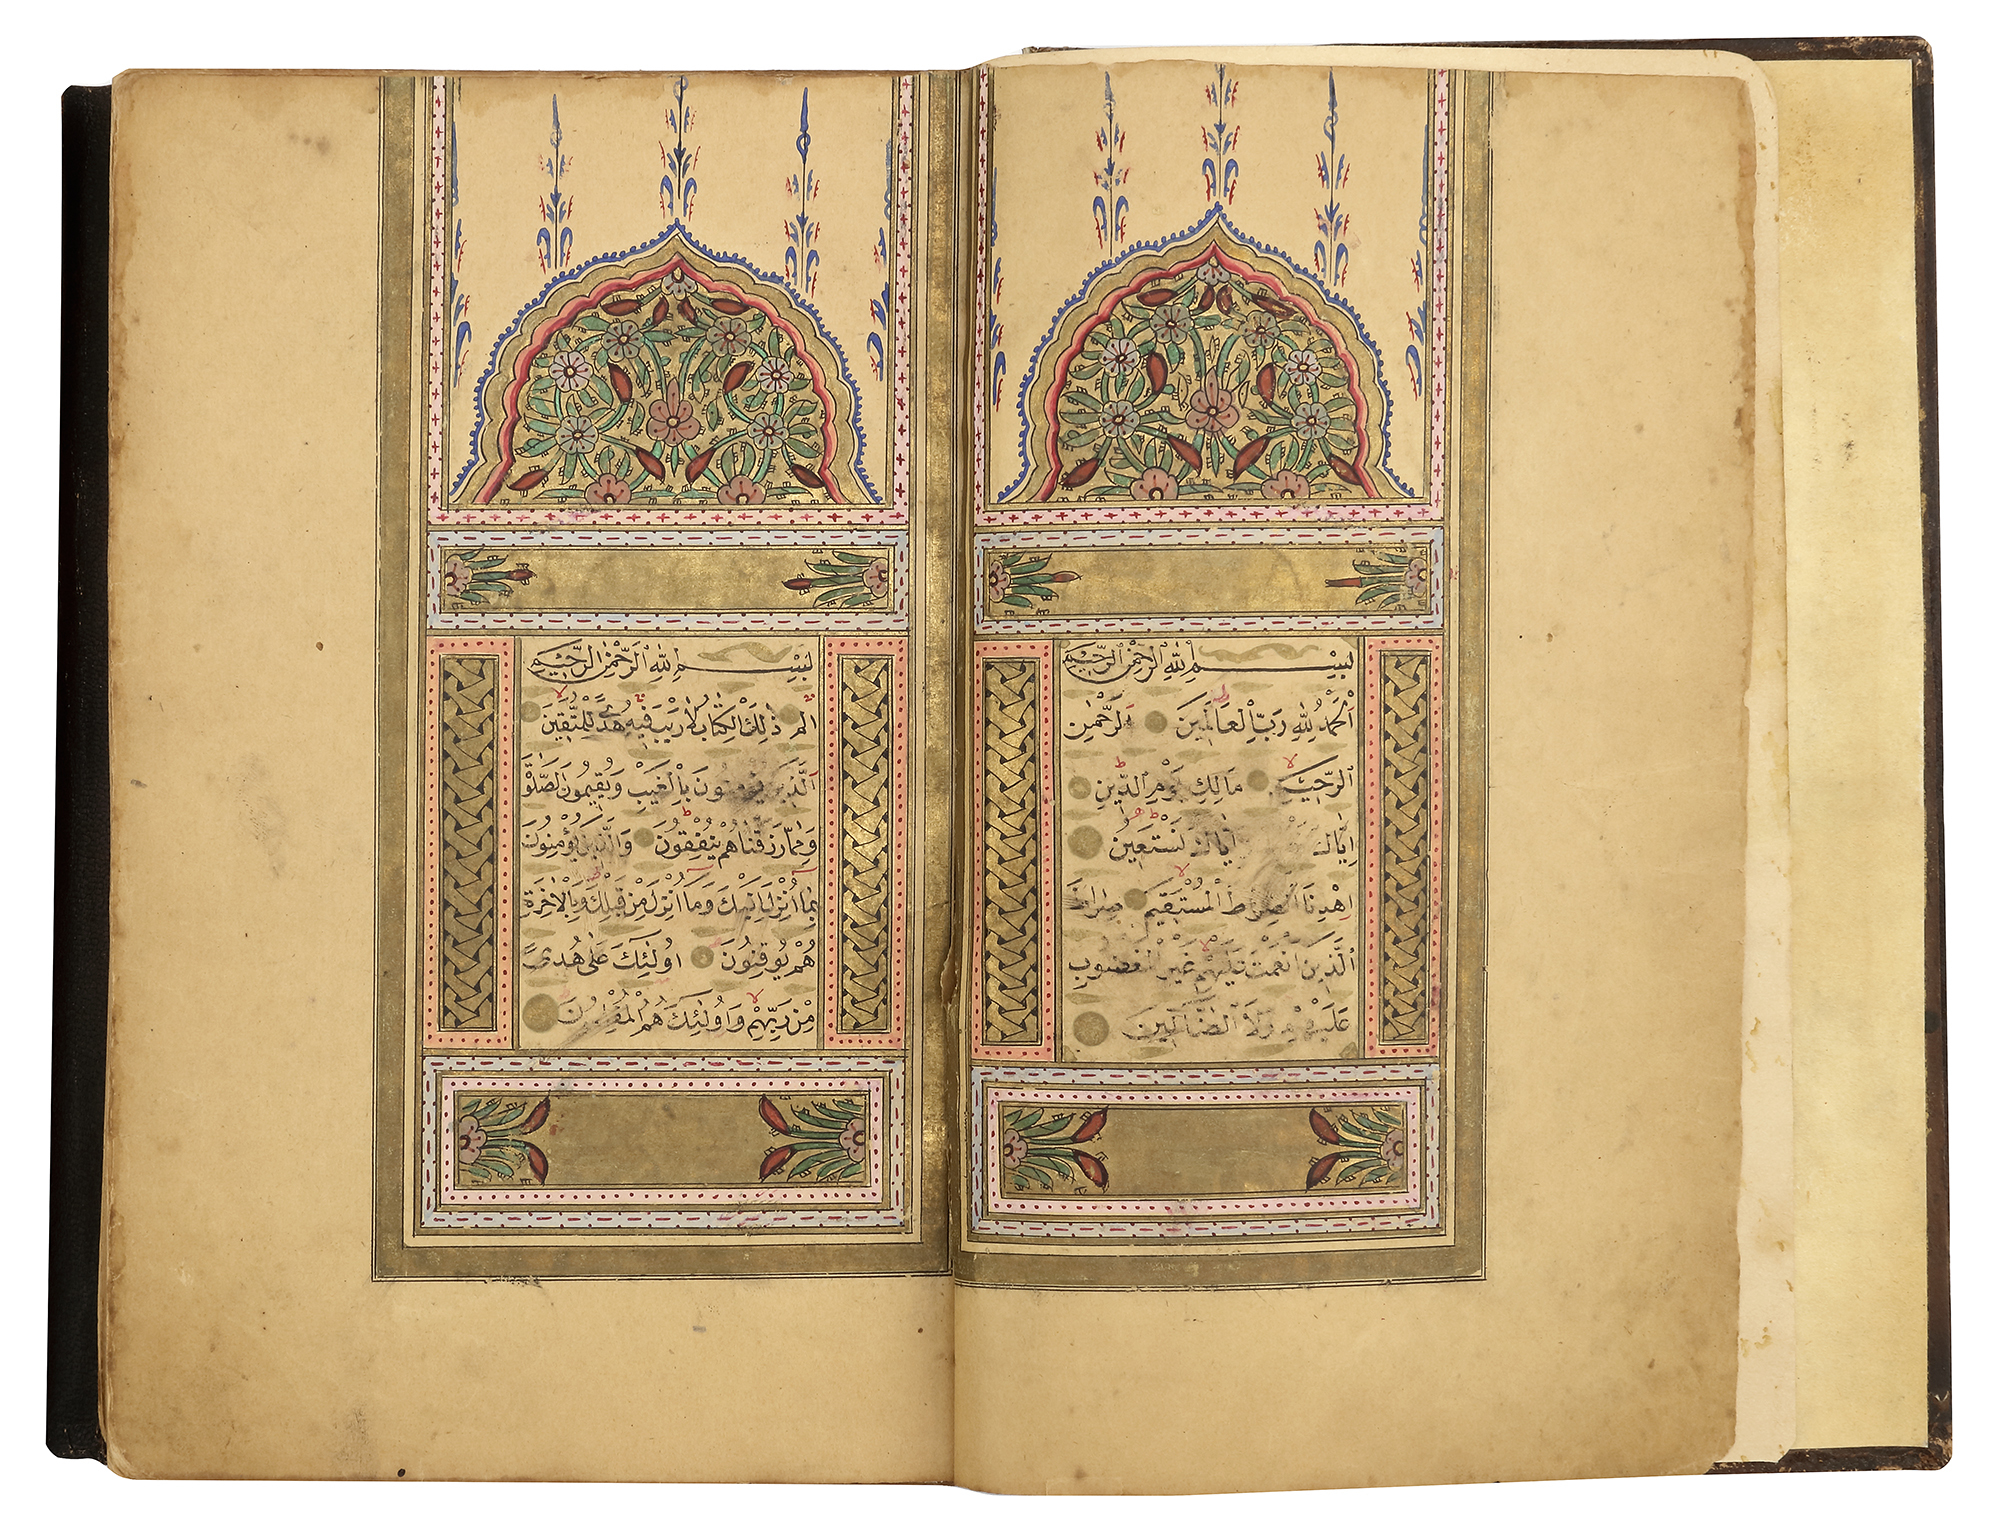 A FINE OTTOMAN QURAN, TURKEY, EDIRNE, WRITTEN BY HUSSEIN AL-HUSNA IBN AHMED AL-ADRUNI, DATED 1287 AH - Image 2 of 8